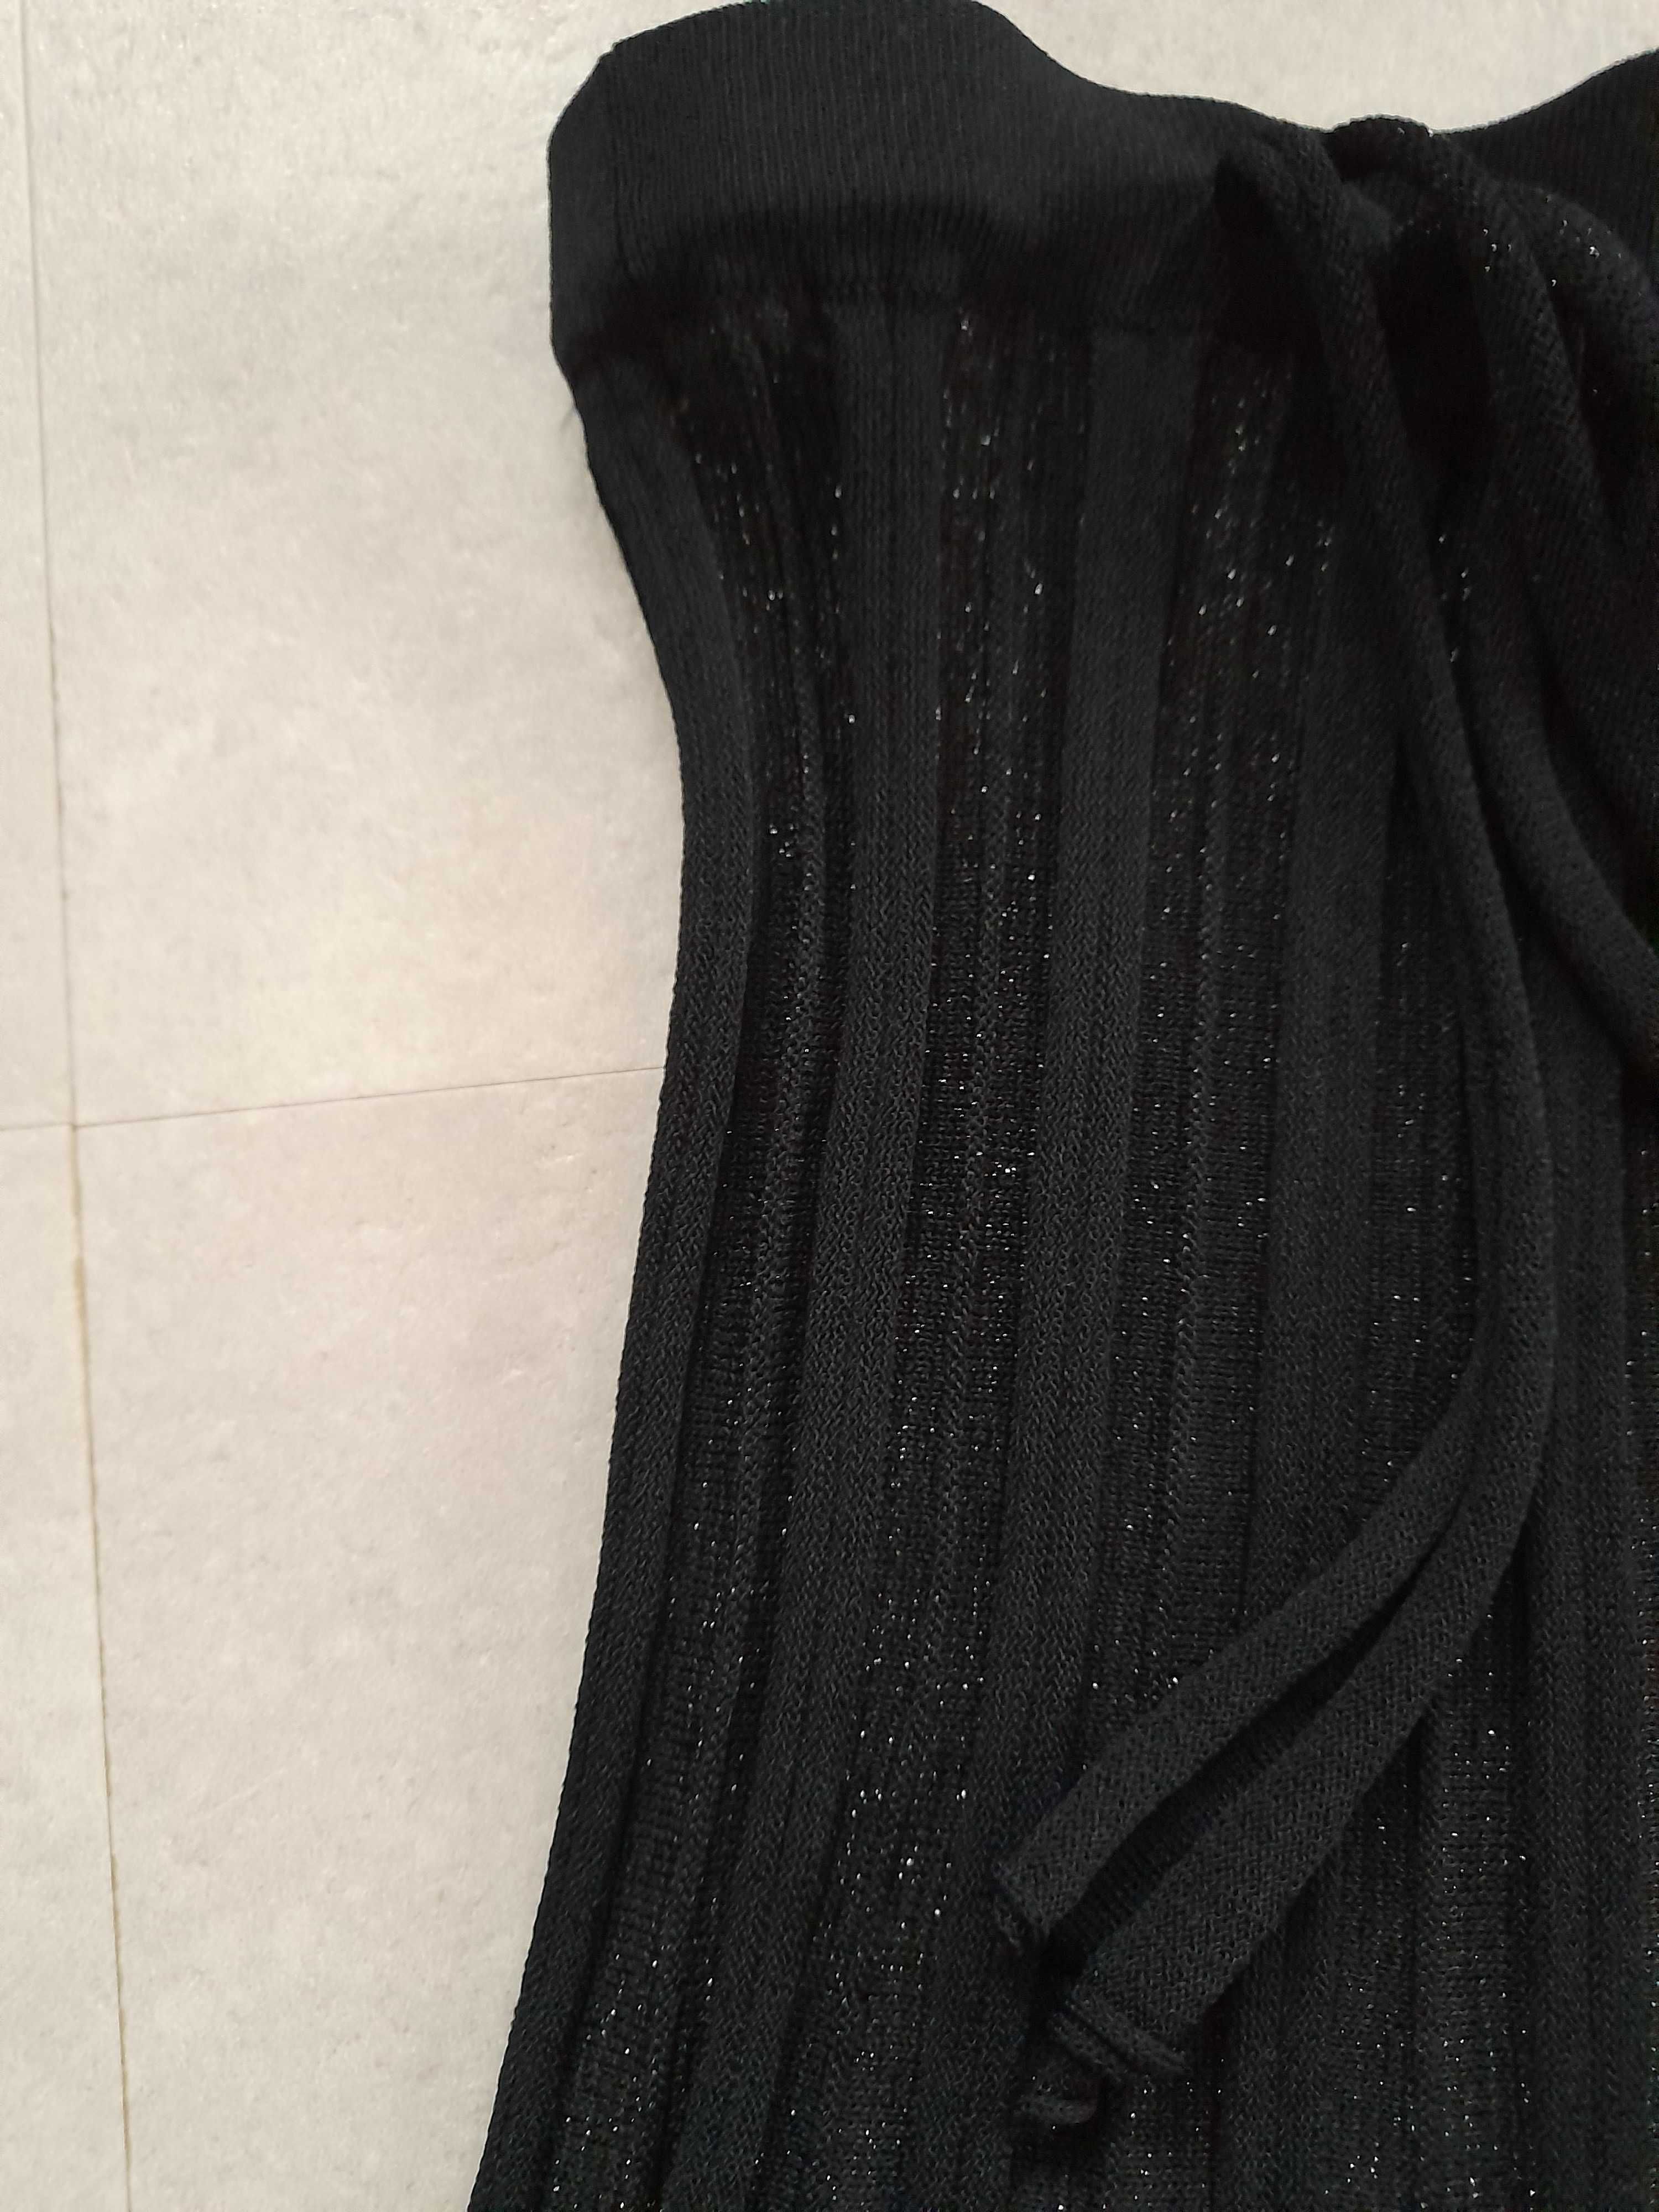 Spodnica dzianinowa Zara rozm. M/38, czarna z metaliczna nitka